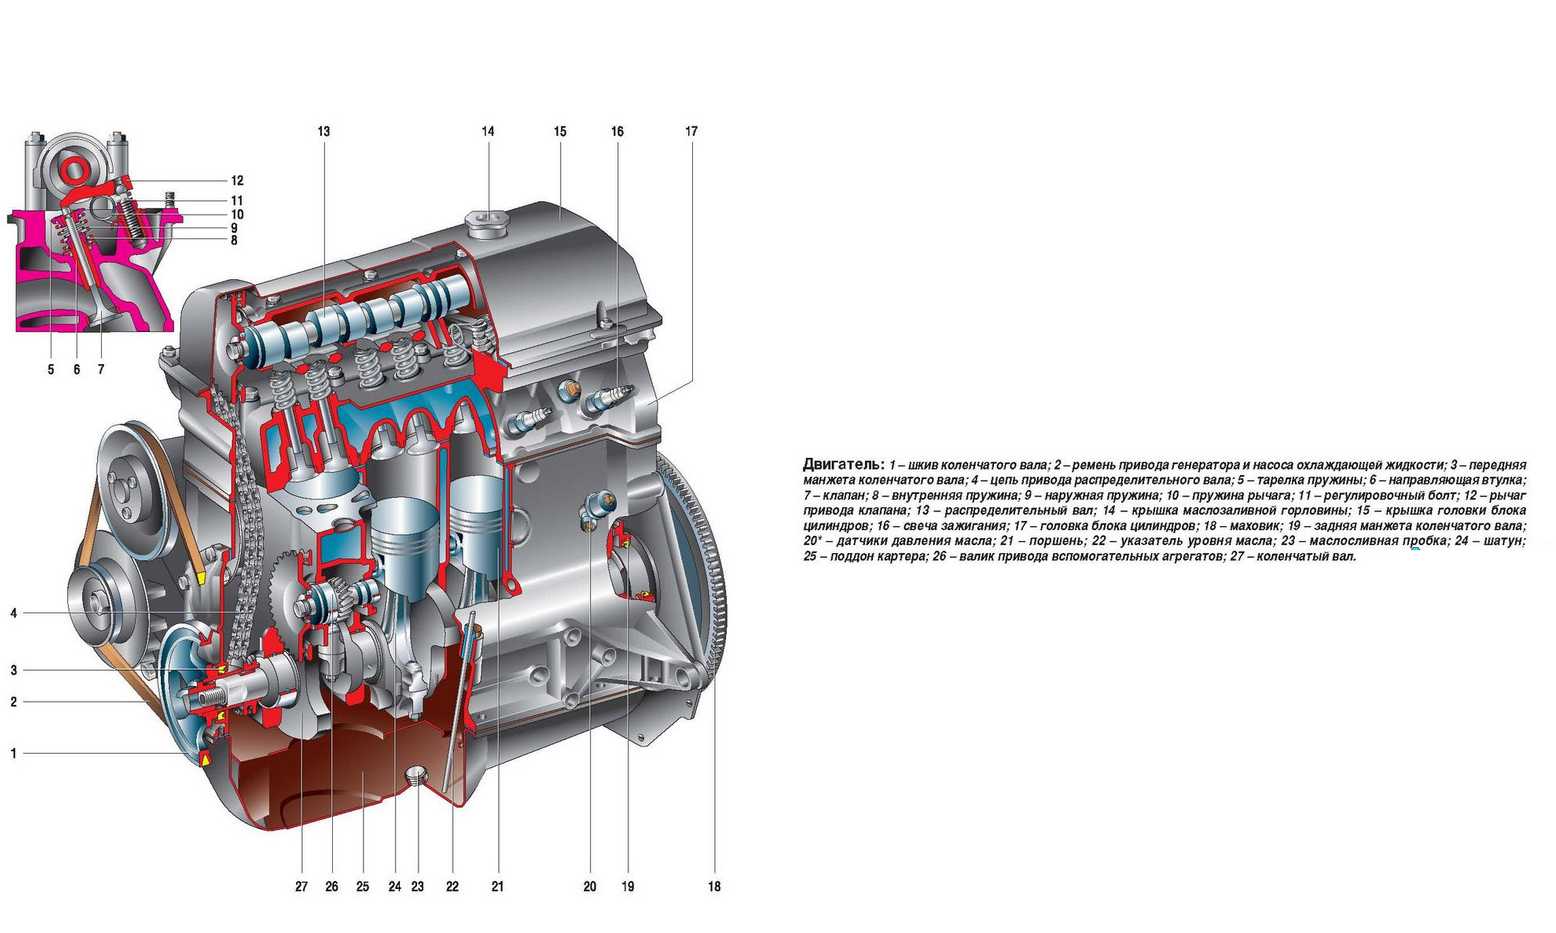 На автомобилях серии «Самара 2» Волжский автозавод устанавливал инжекторные двигатели с электронным, распределенным впрыском топлива И для